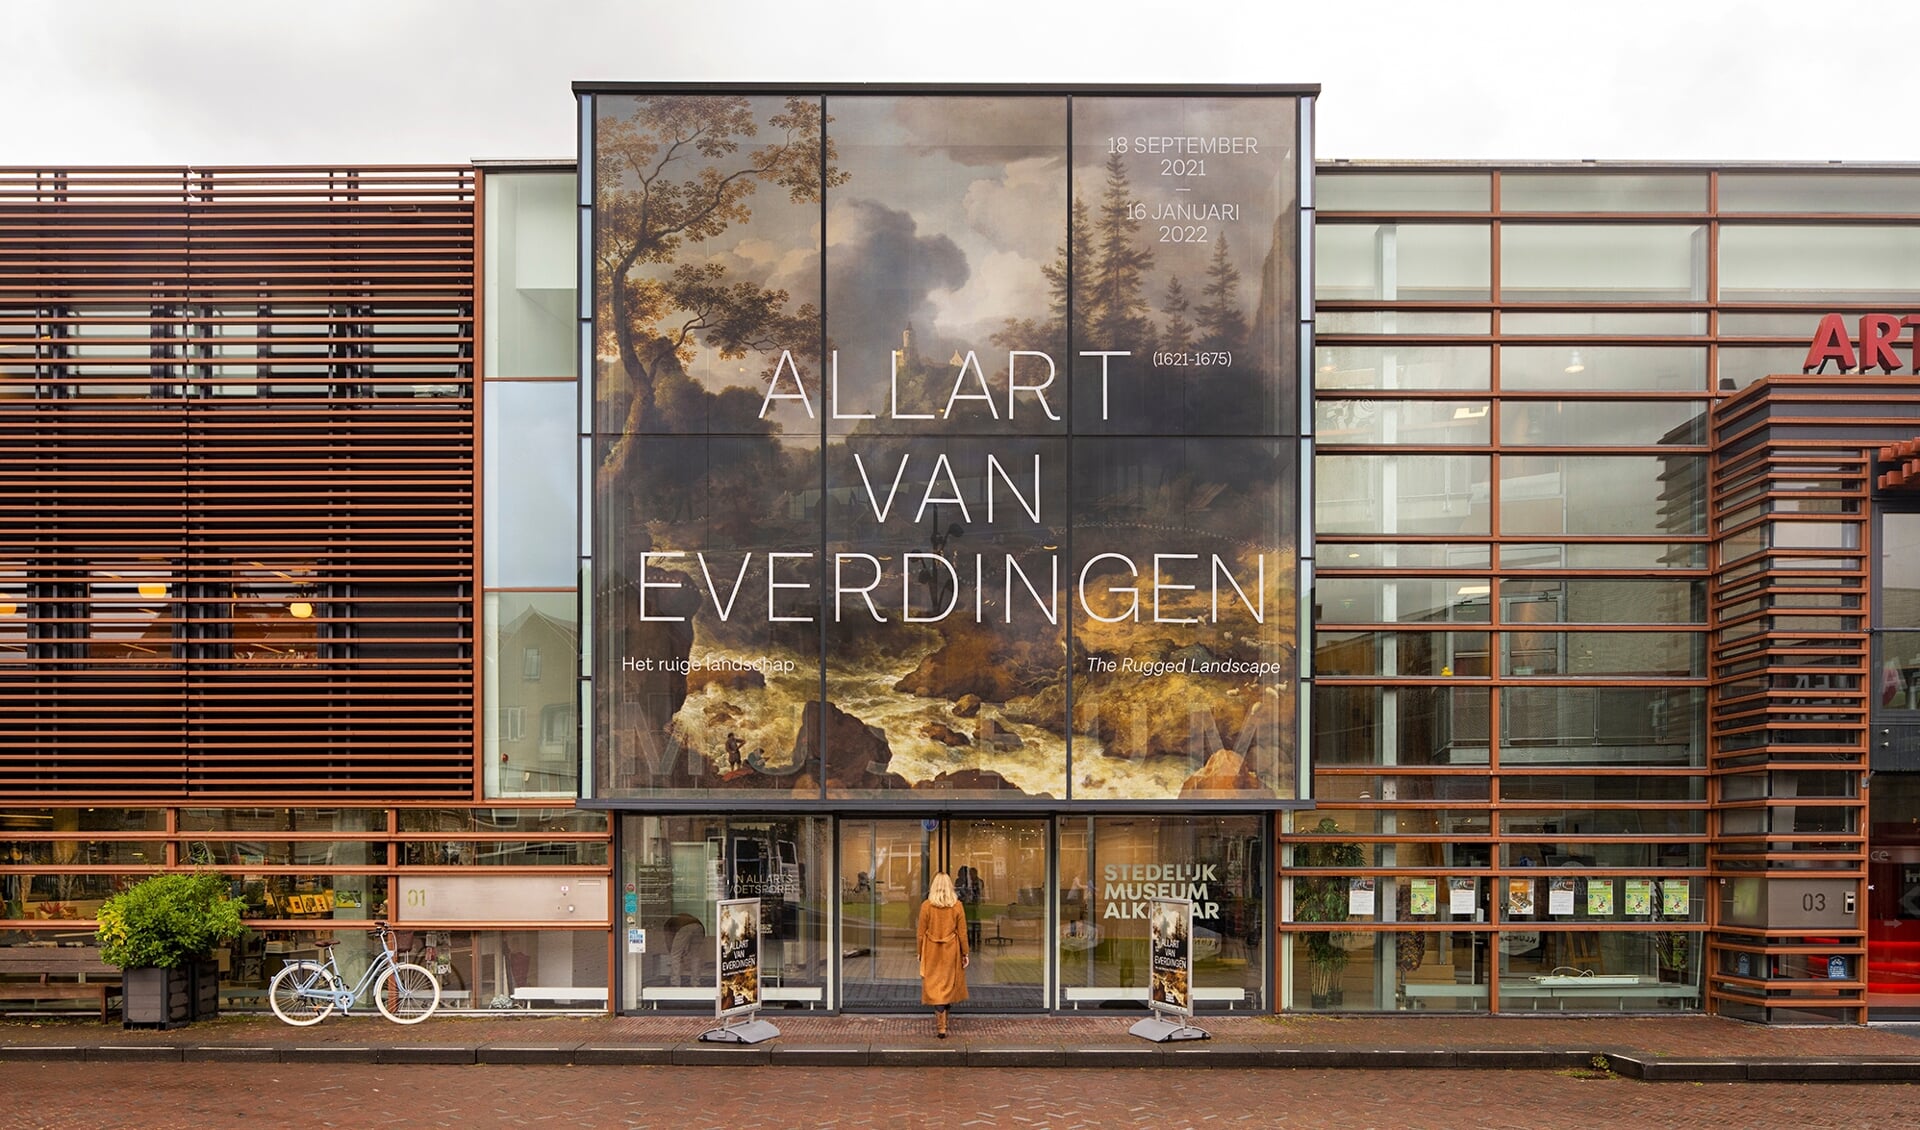 De expositie Allard van Everdingen is nog tot en met mei 2022 te zien.